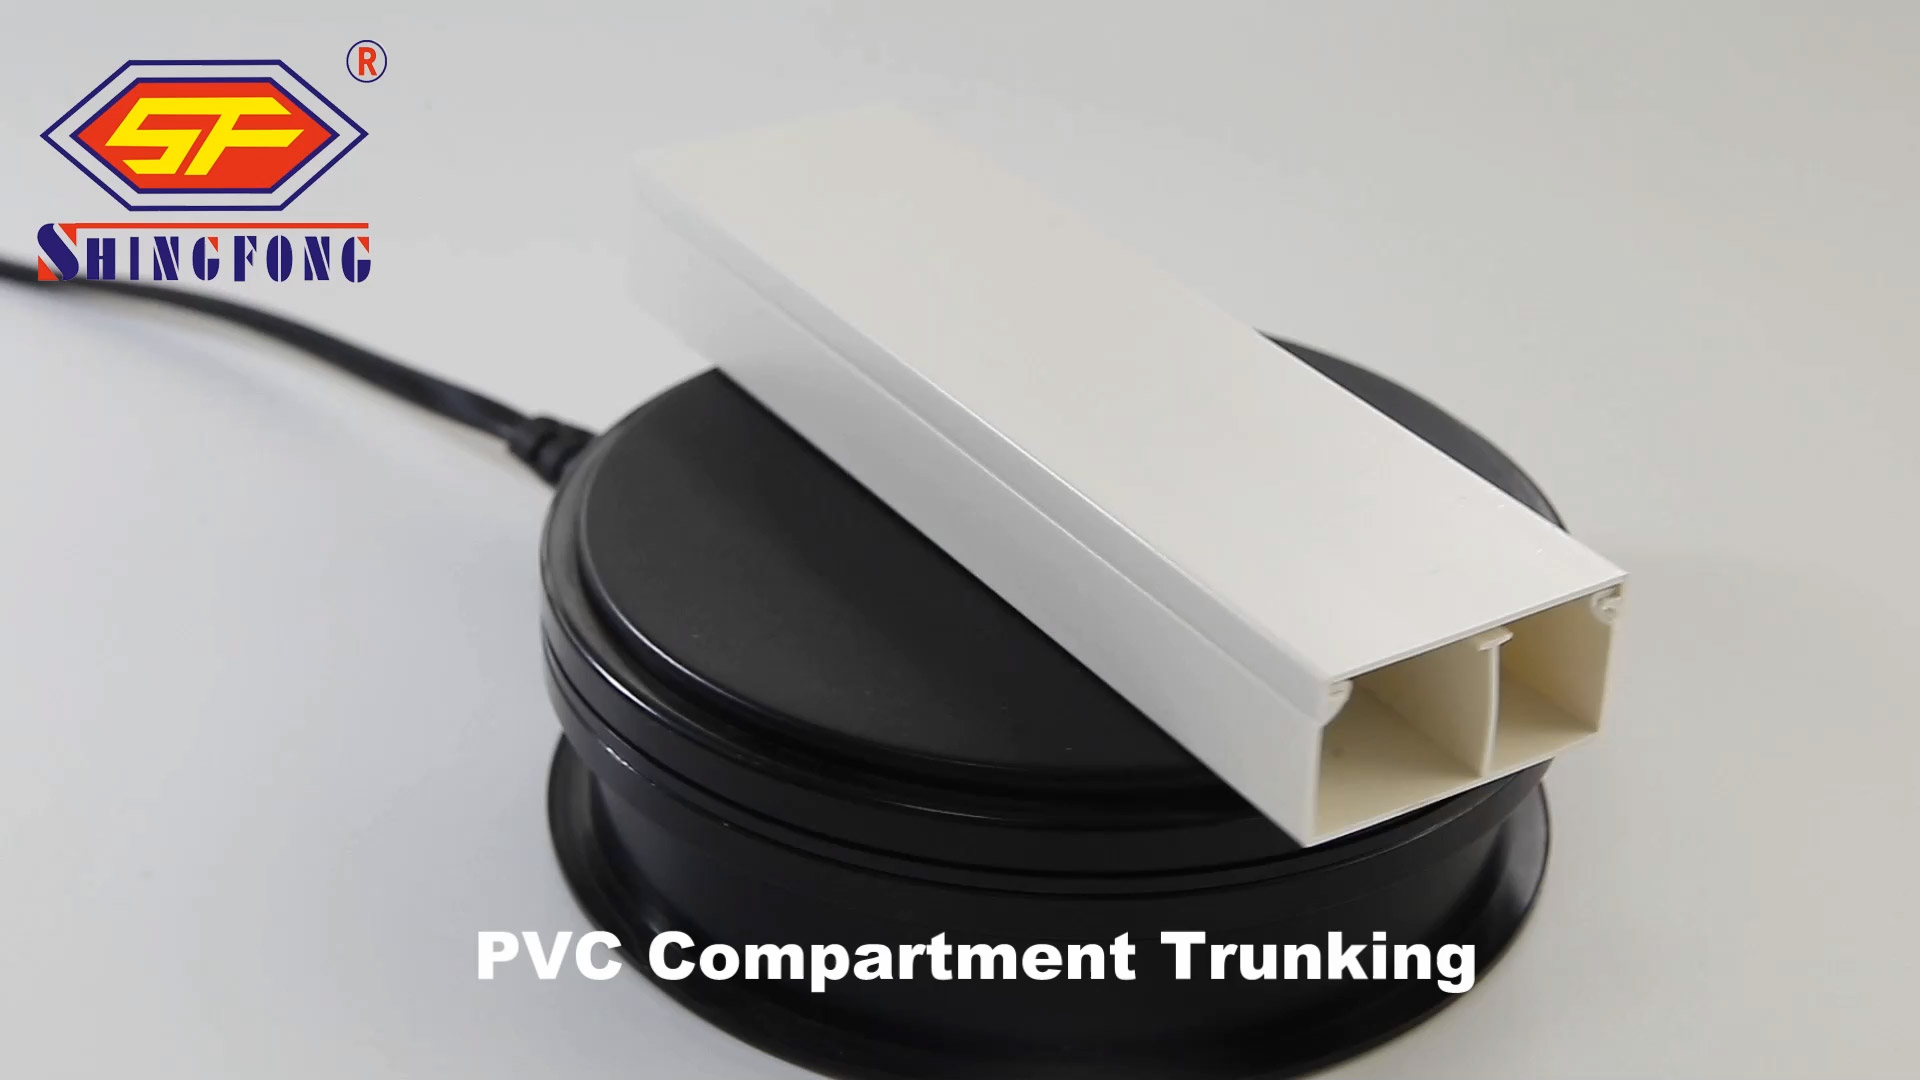 Gepasmaakte PVC-kompartement trunking vervaardigers uit China